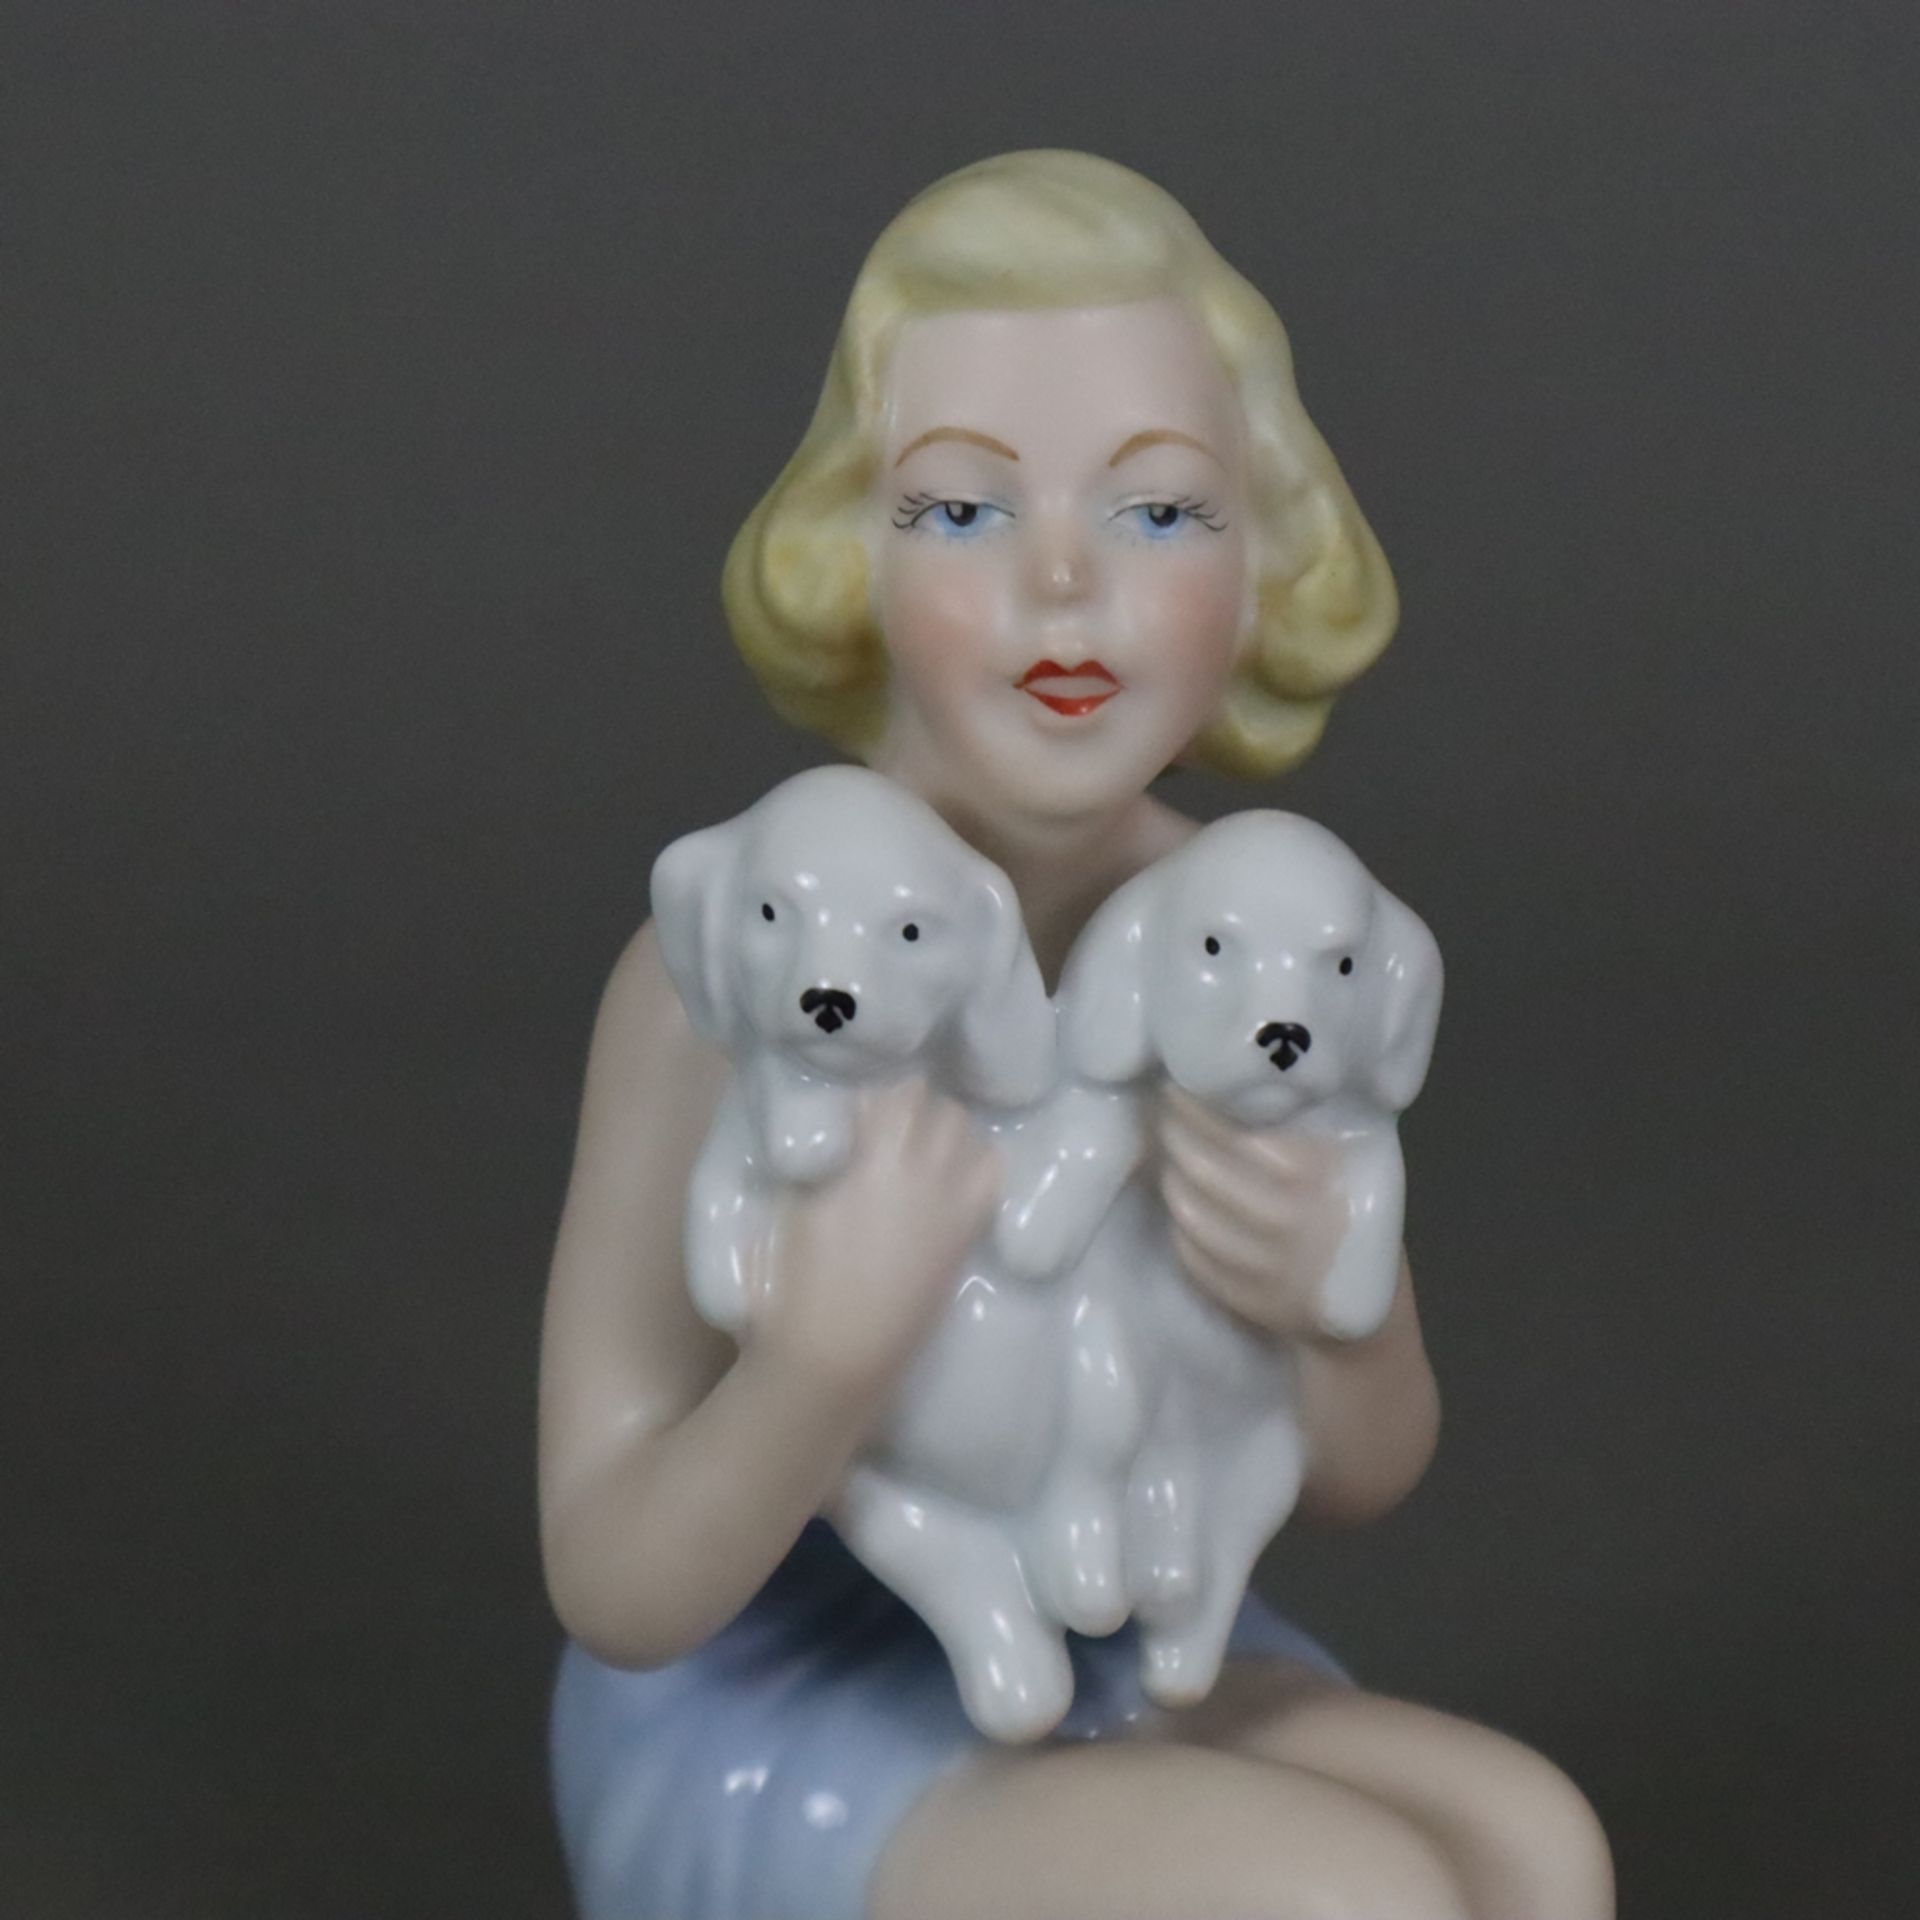 Porzellanfigur "Junge Frau mit zwei Welpen spielend" - Gerold Porzellan, Bavaria, 2. Hälfte 20. Jh. - Bild 2 aus 7